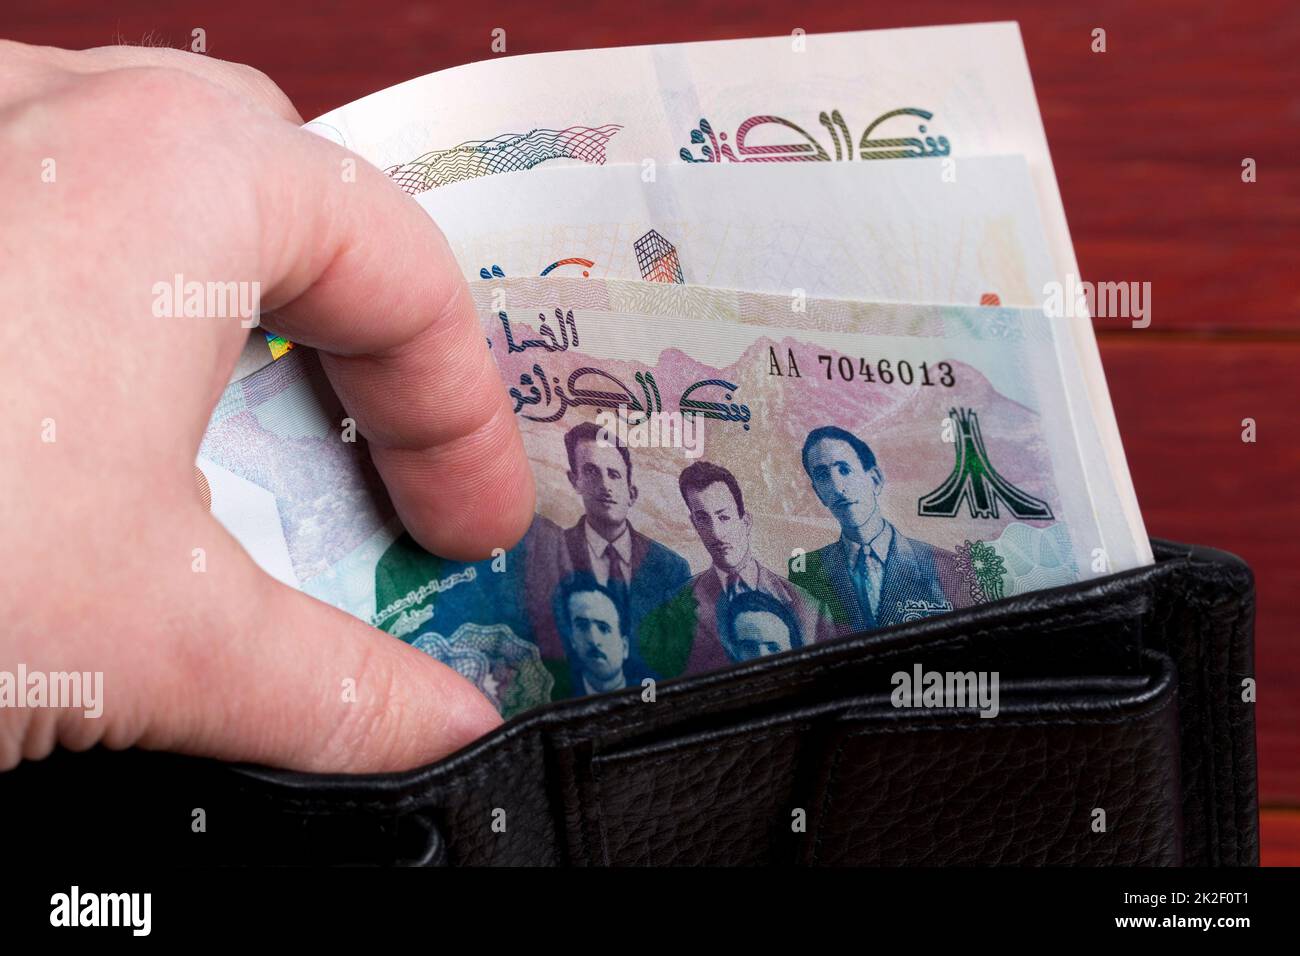 Billet algérien Banque de photographies et d'images à haute résolution -  Alamy